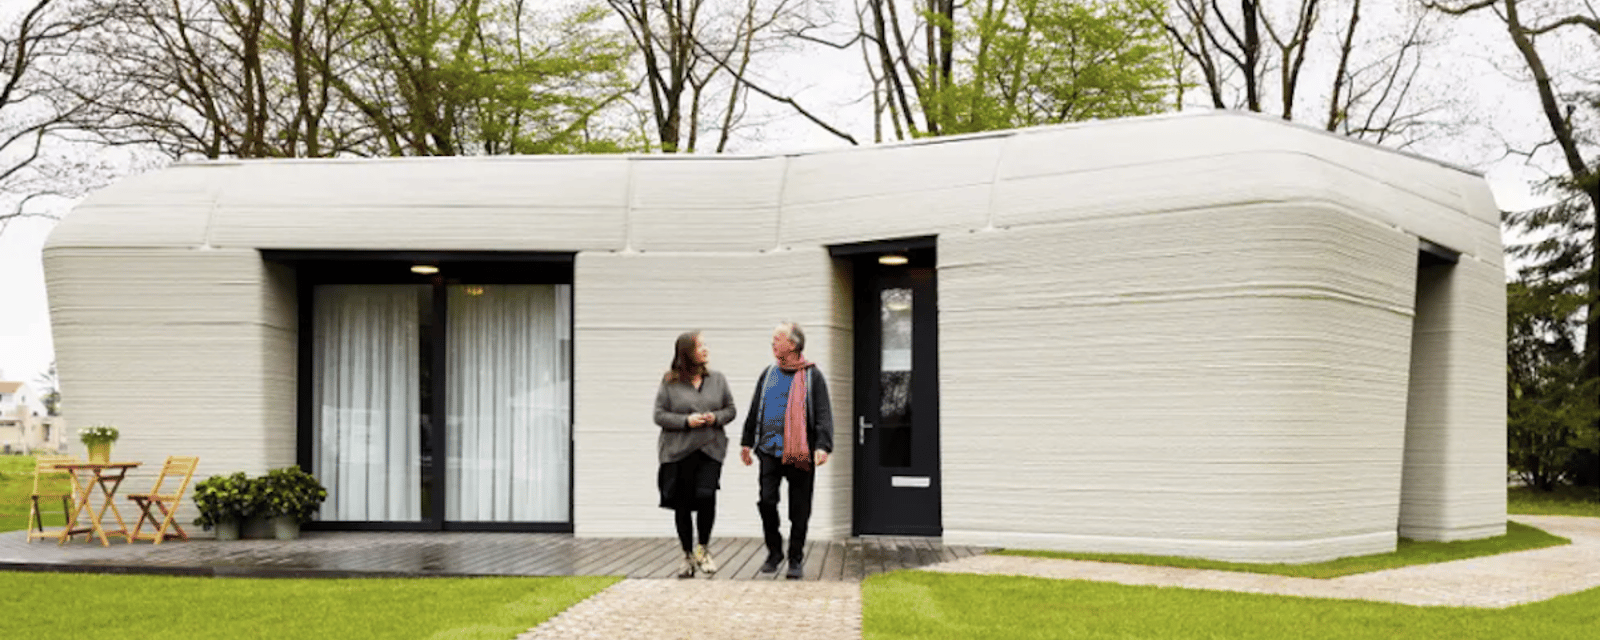 Un couple vient d'emménager dans une maison imprimée en 3D 